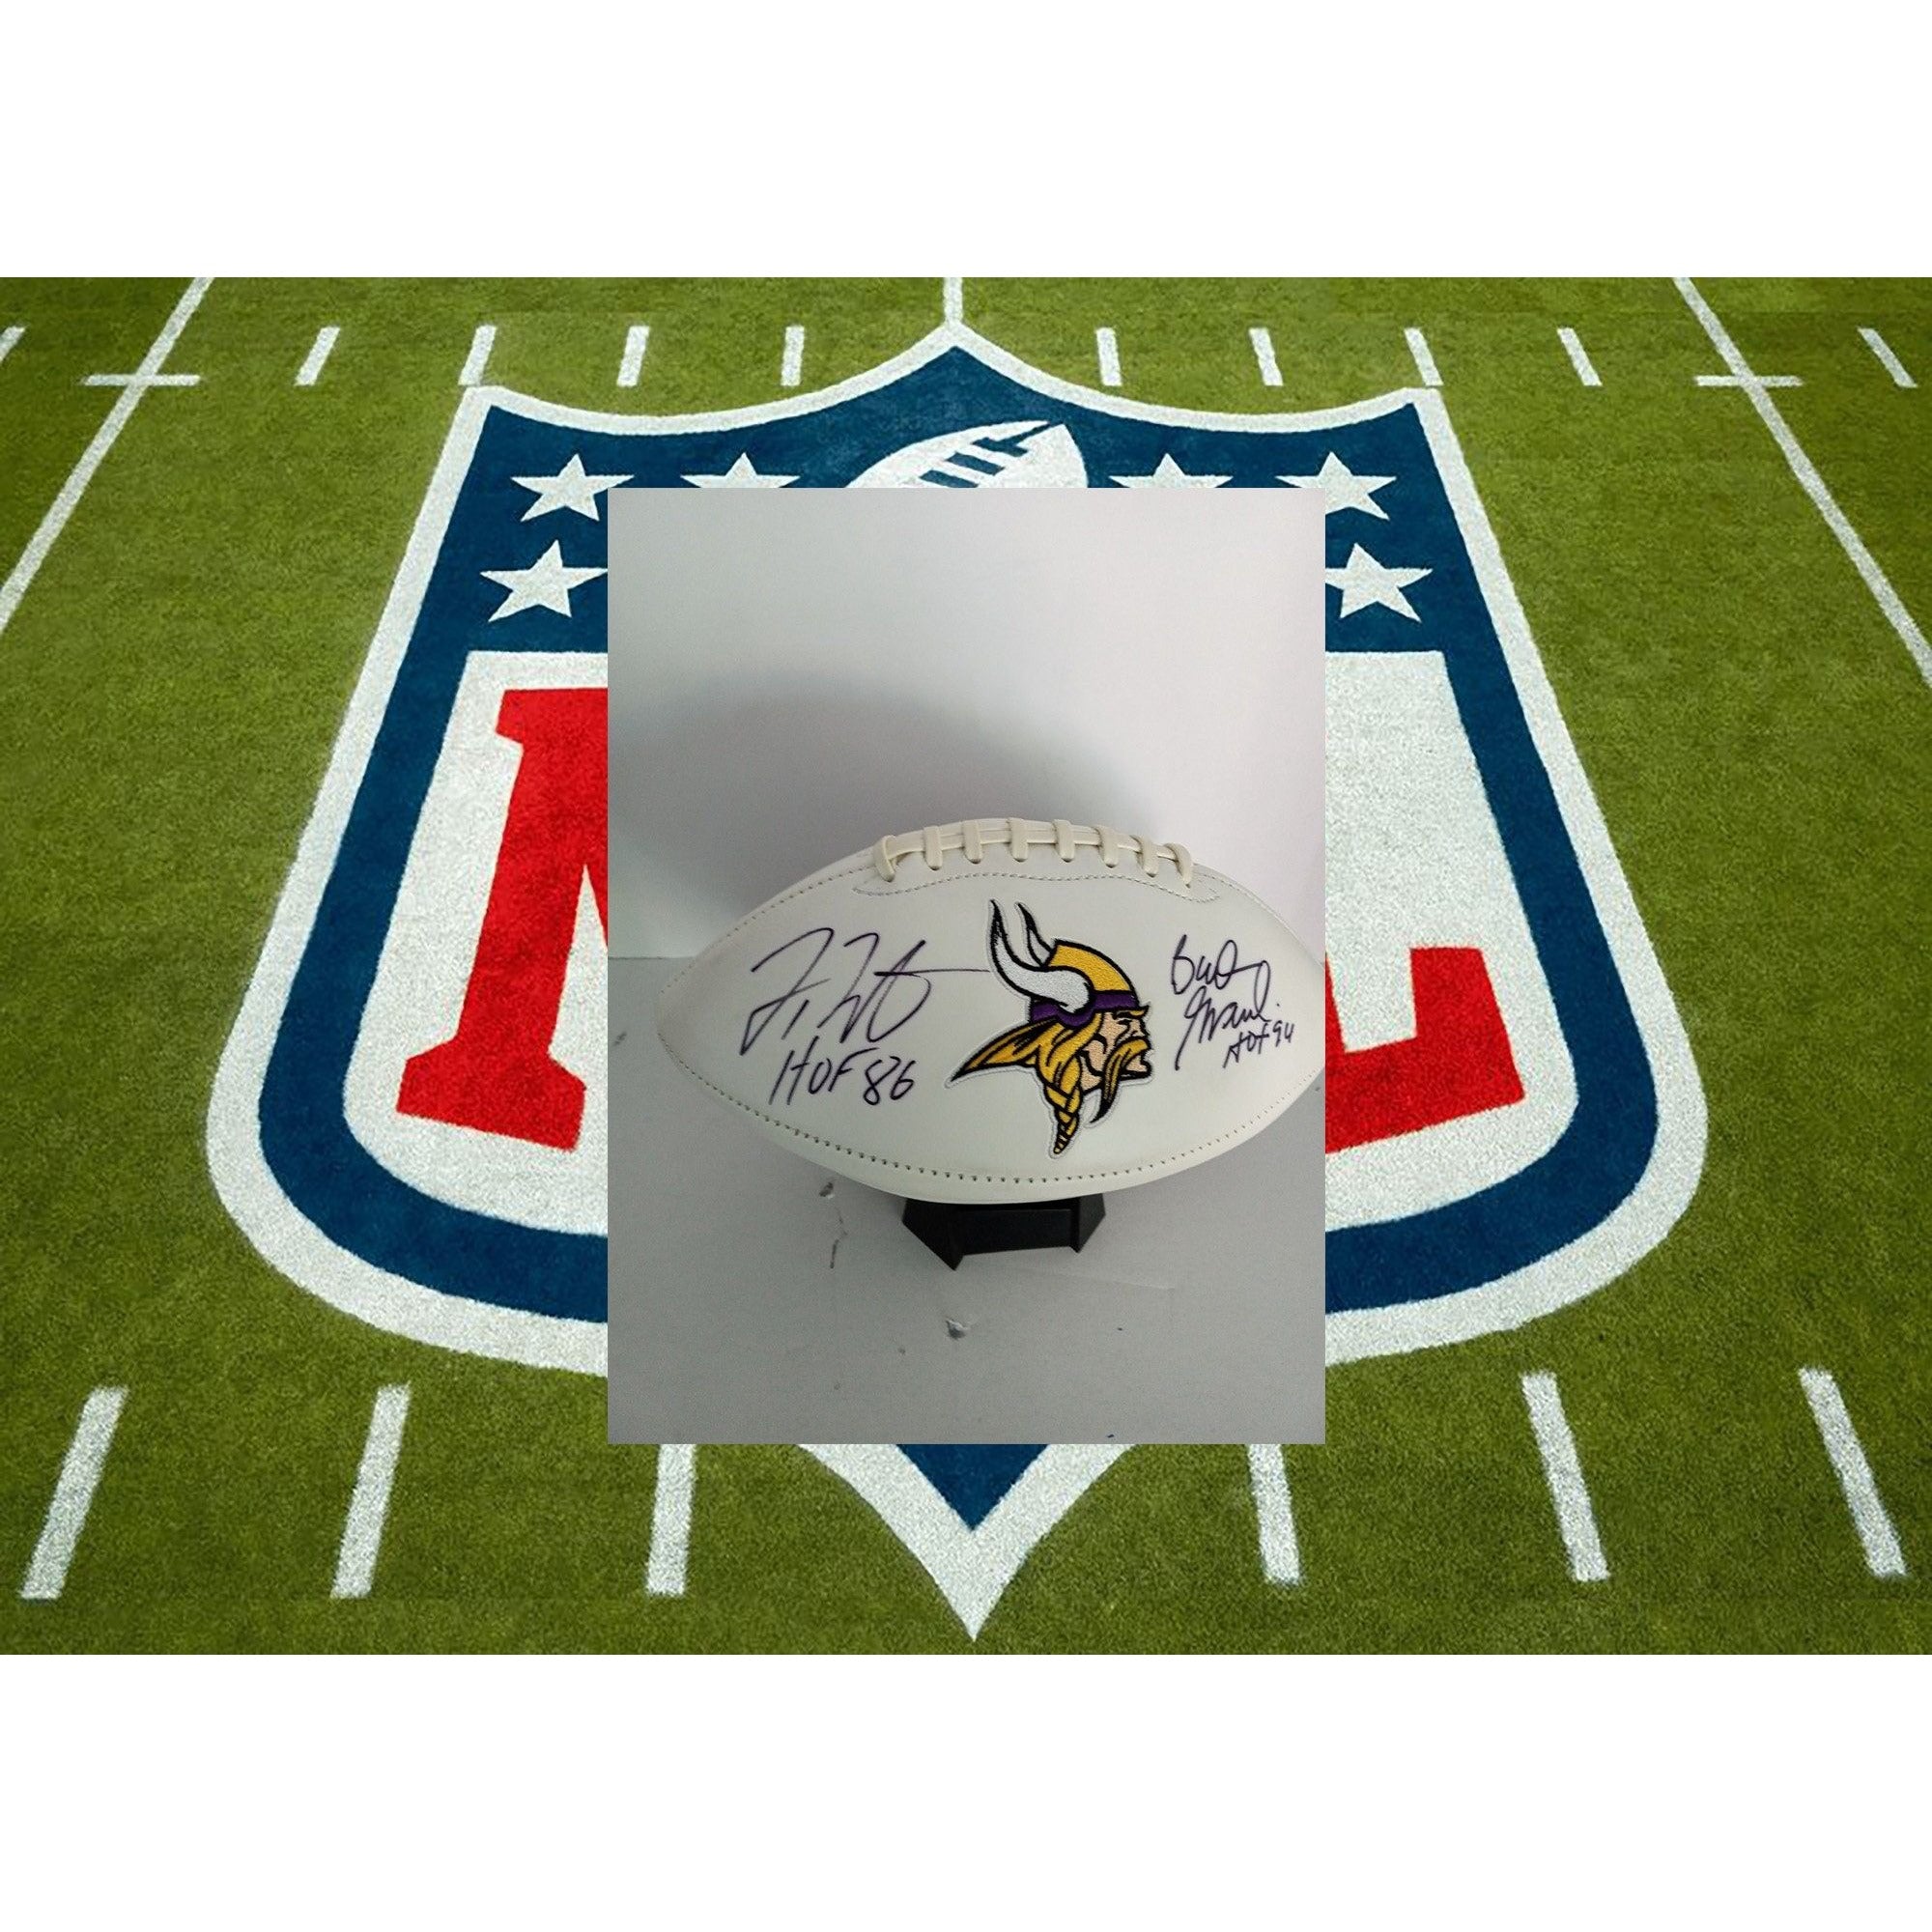 Bud Grant, Fran Tarkenton, Minnesota Vikings signed football with proof